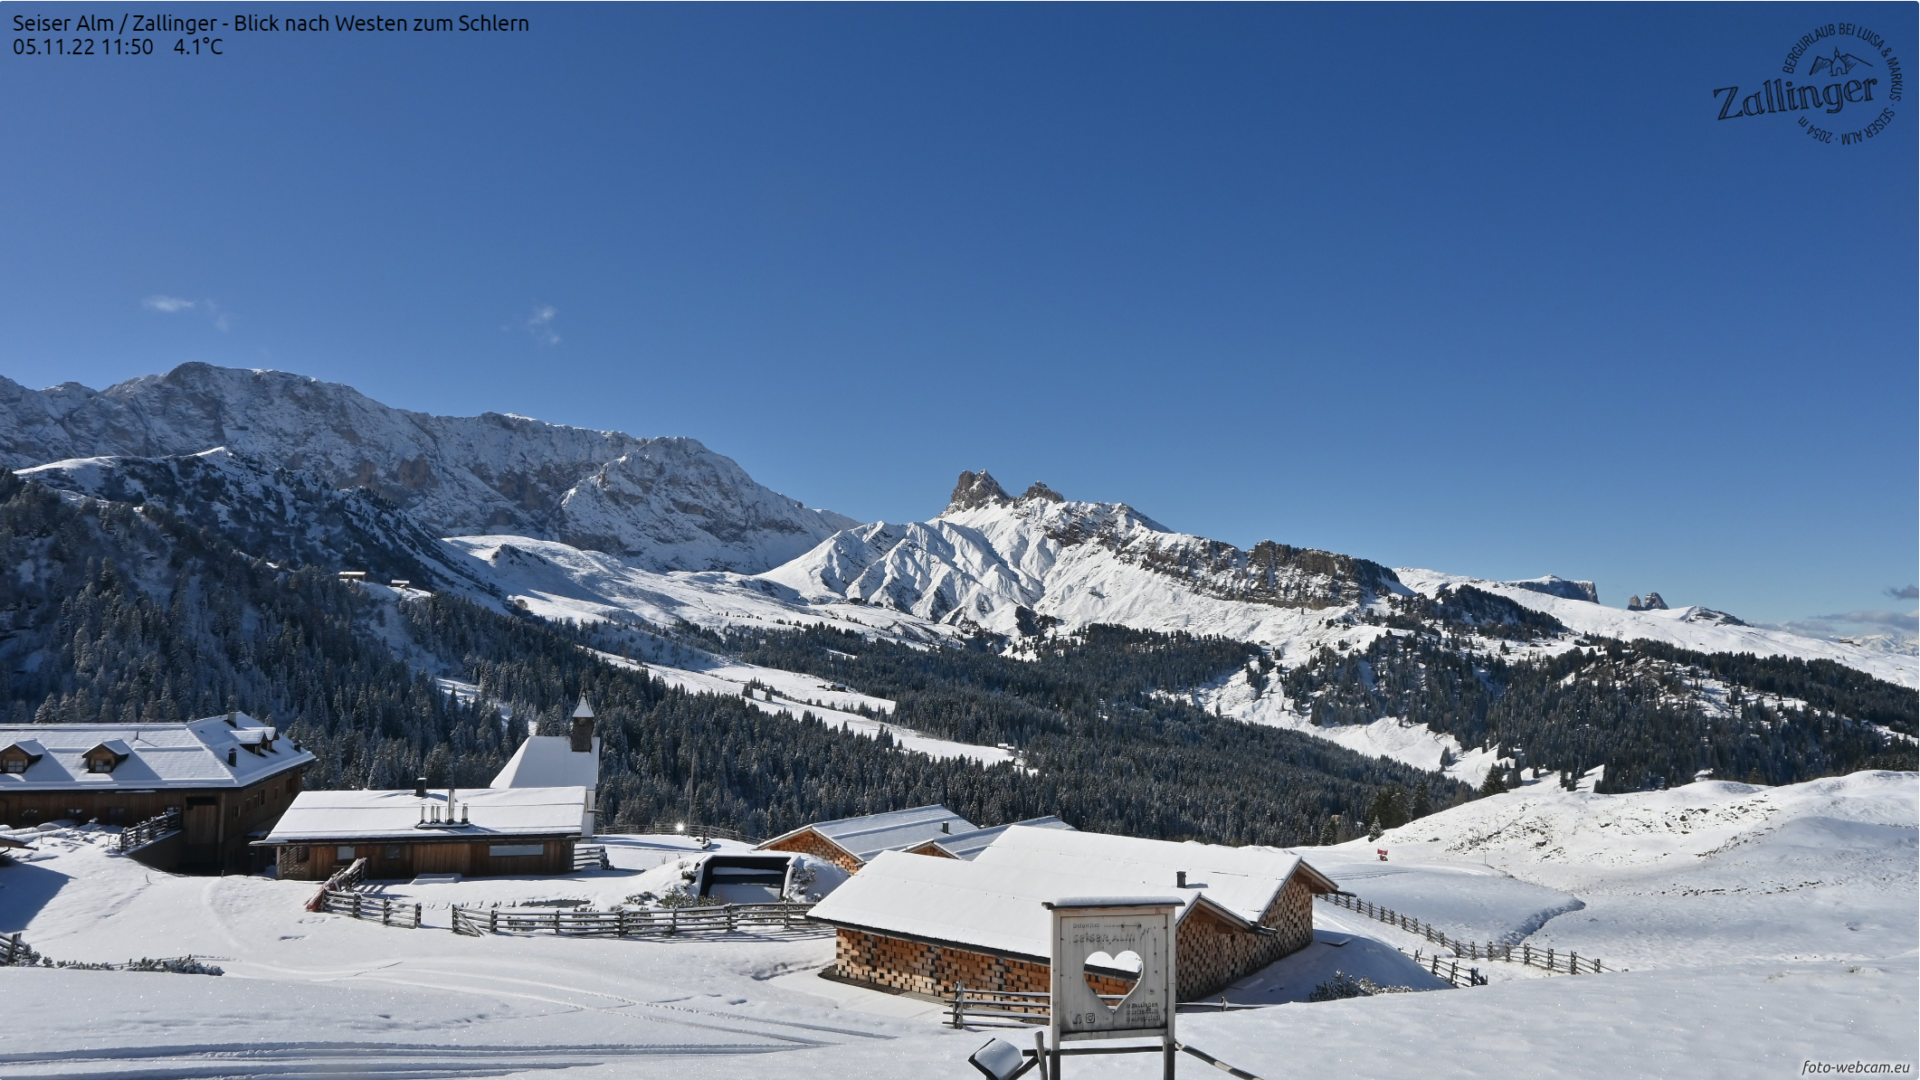 Sneeuwdump Alpen zit erop en ex-orkaan op weg naar (West-)Europa!